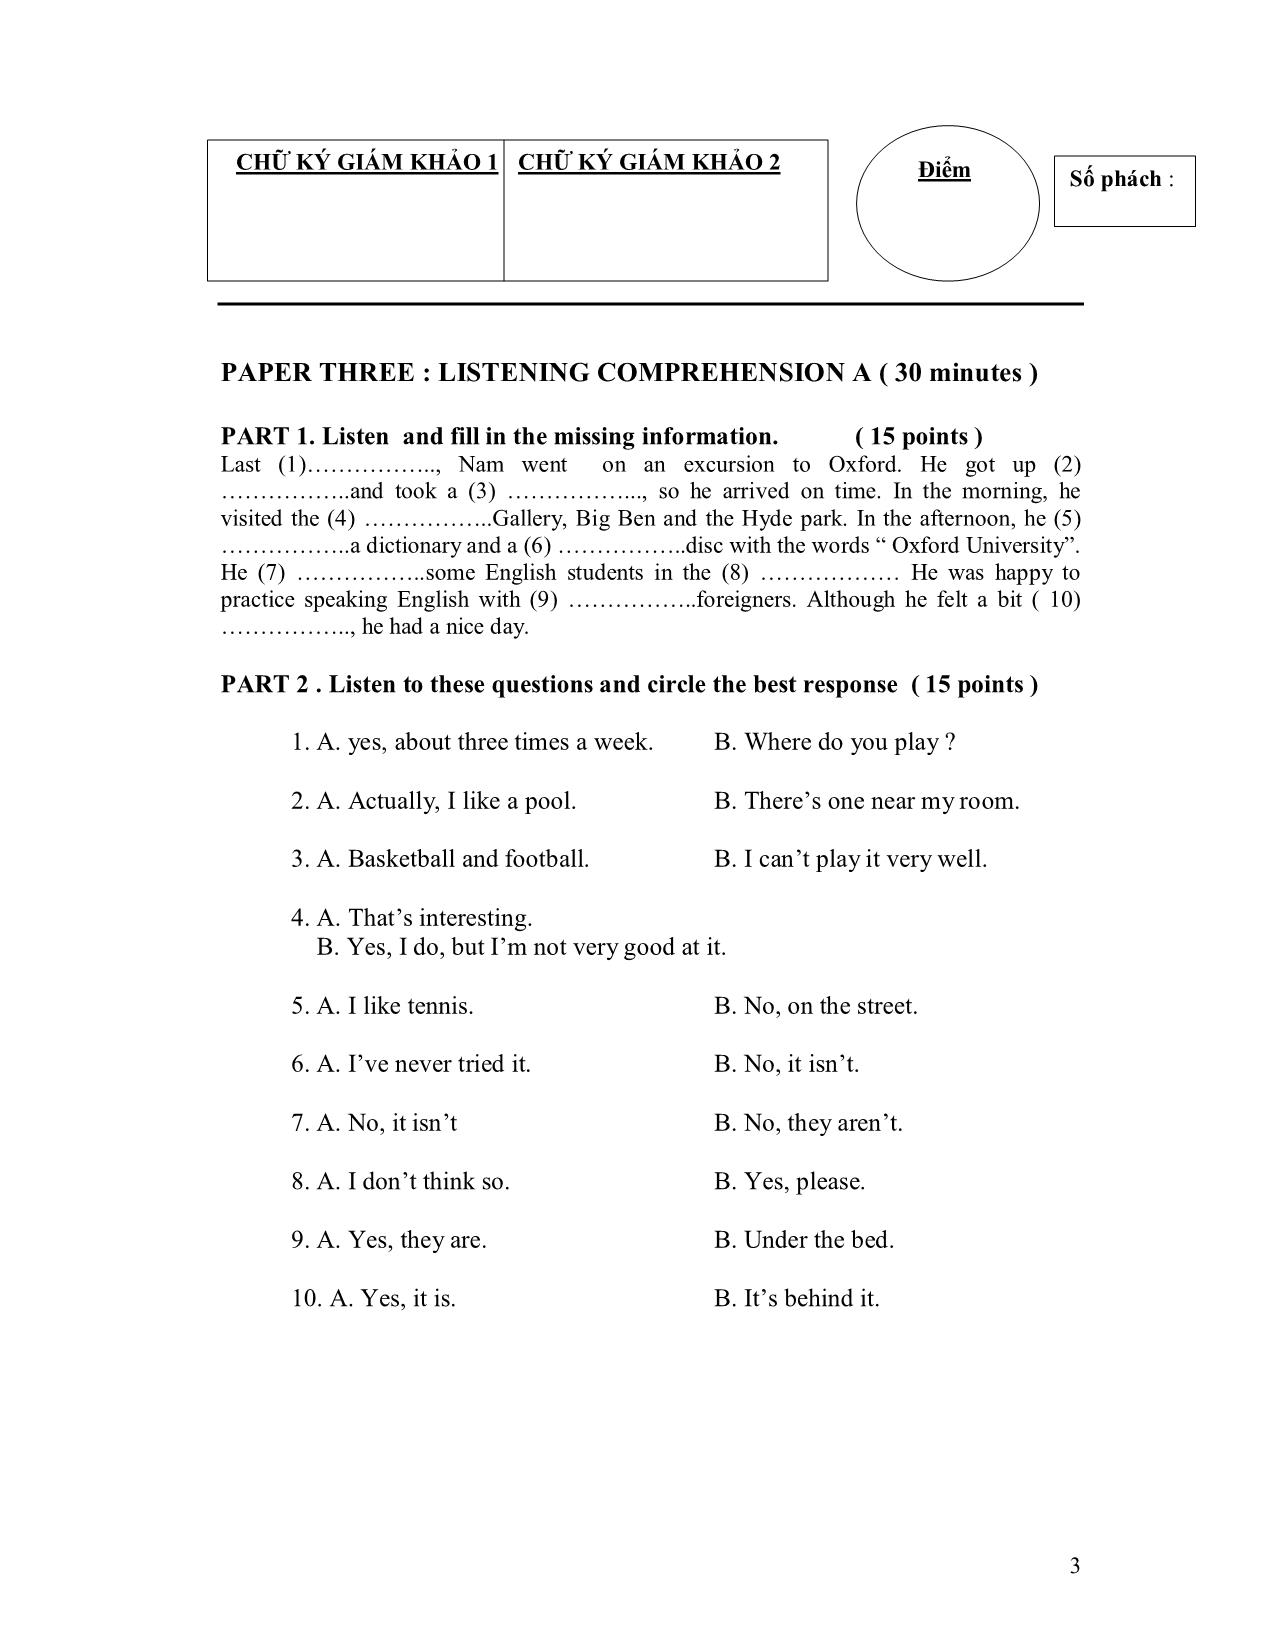 Đề thi môn viết tiếng Anh A - 2008 trang 3